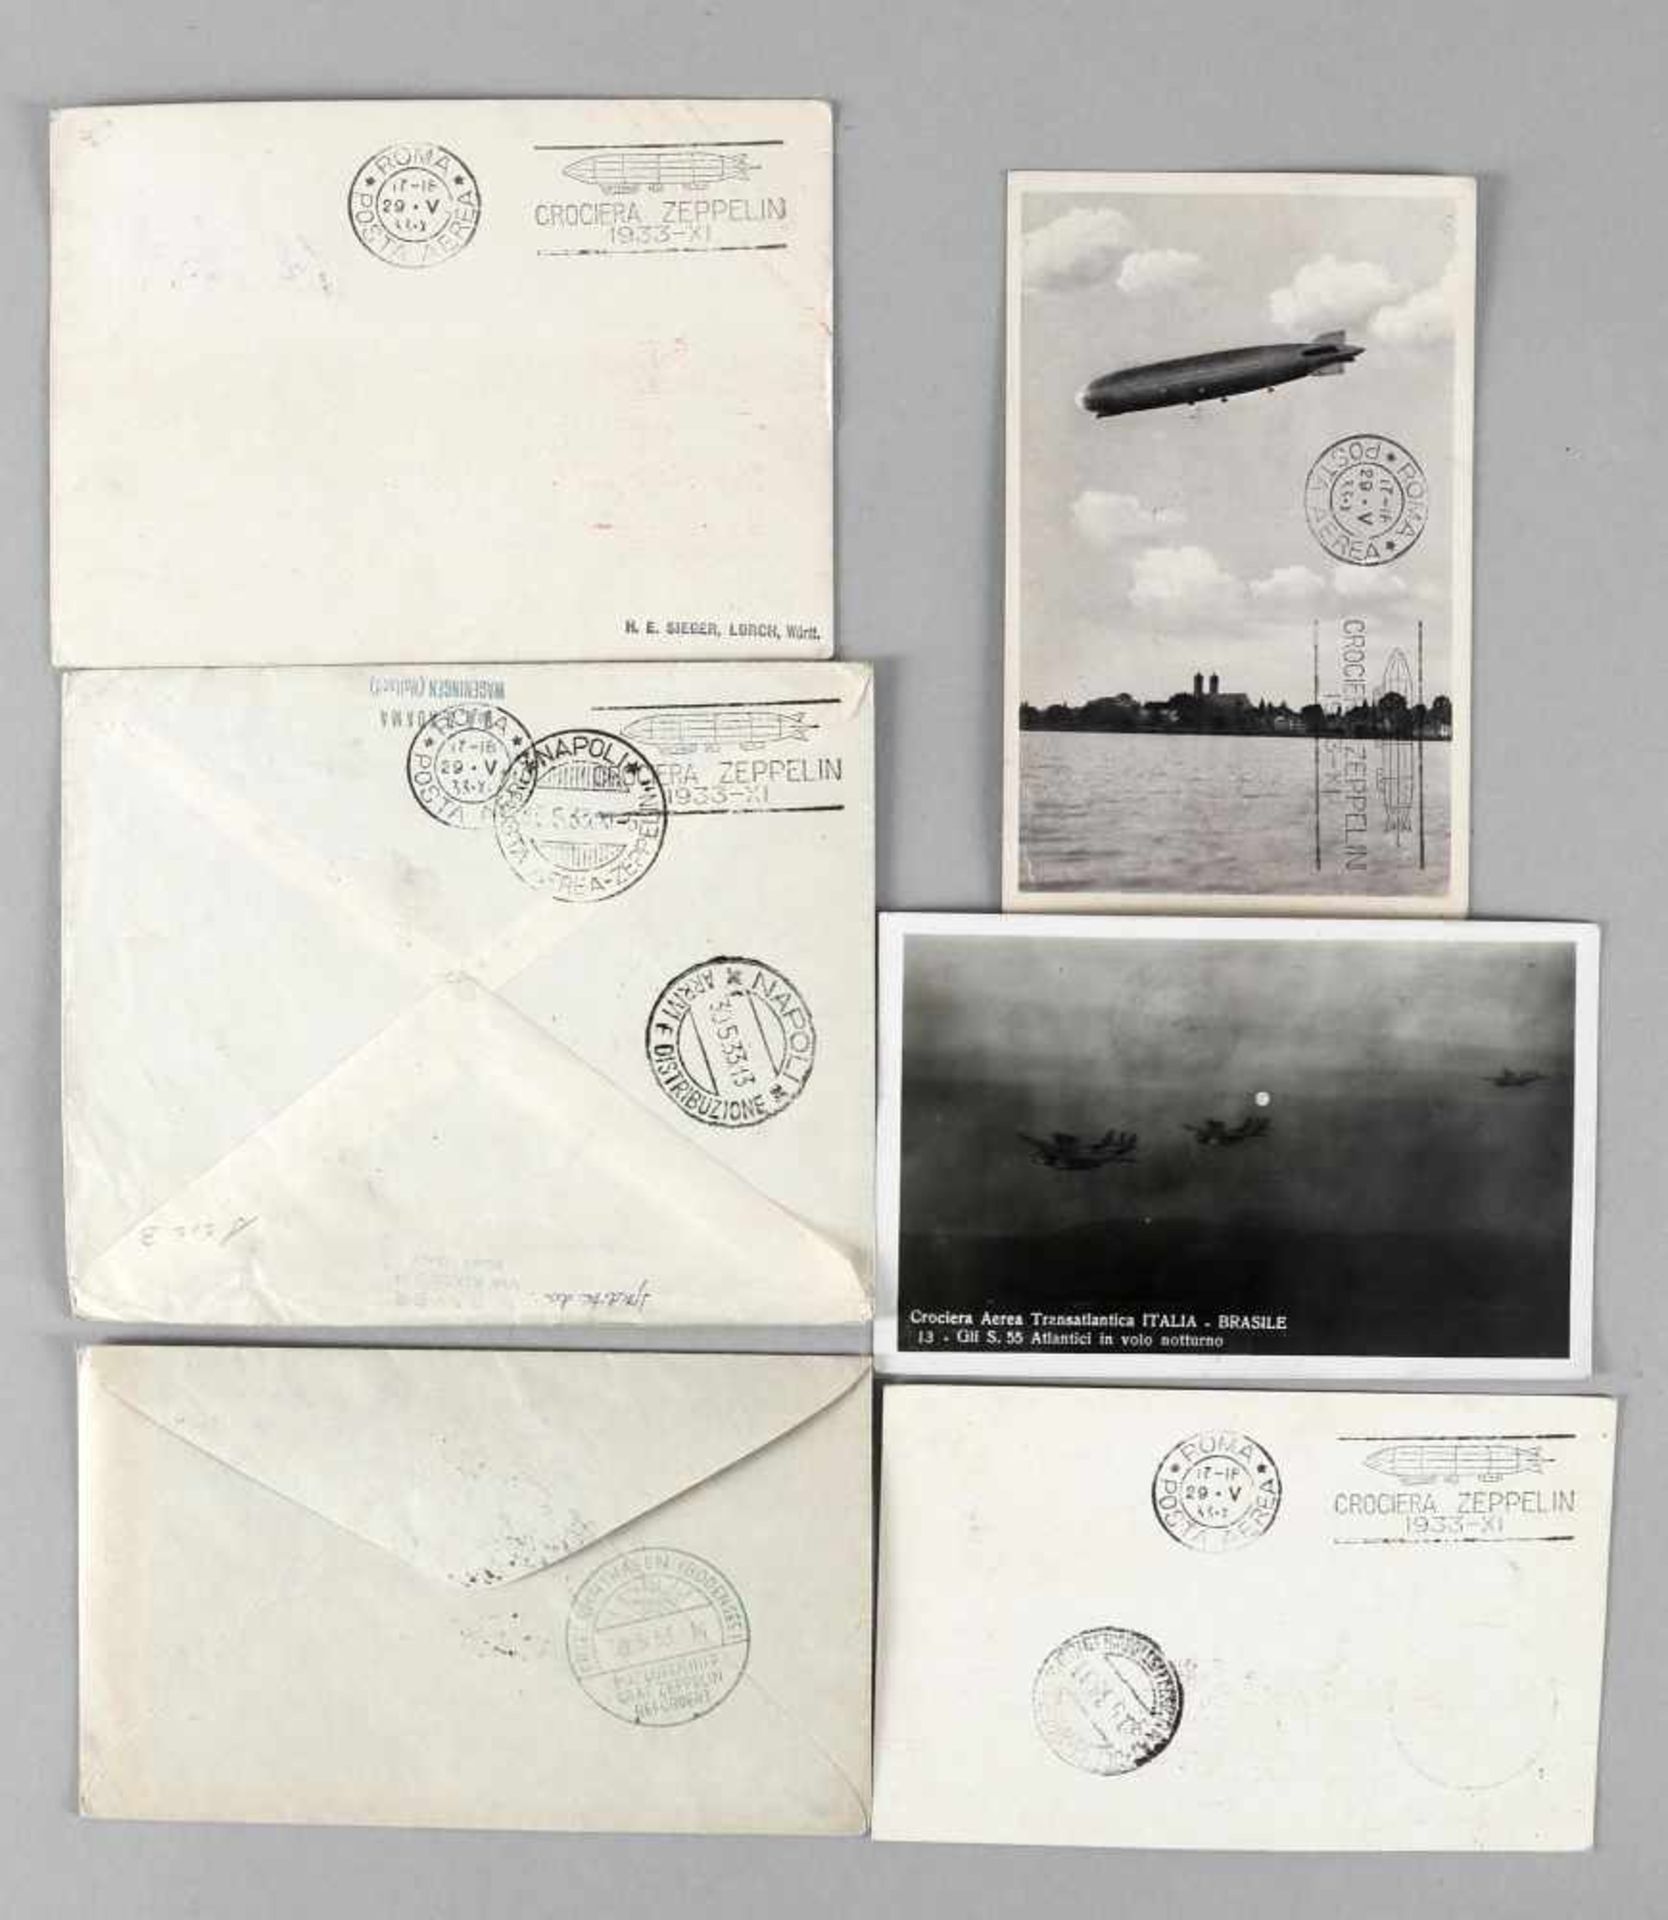 Zeppelinpost, 2 Zeppelinbriefe, 4 Zeppelinpostkarten - Image 2 of 2